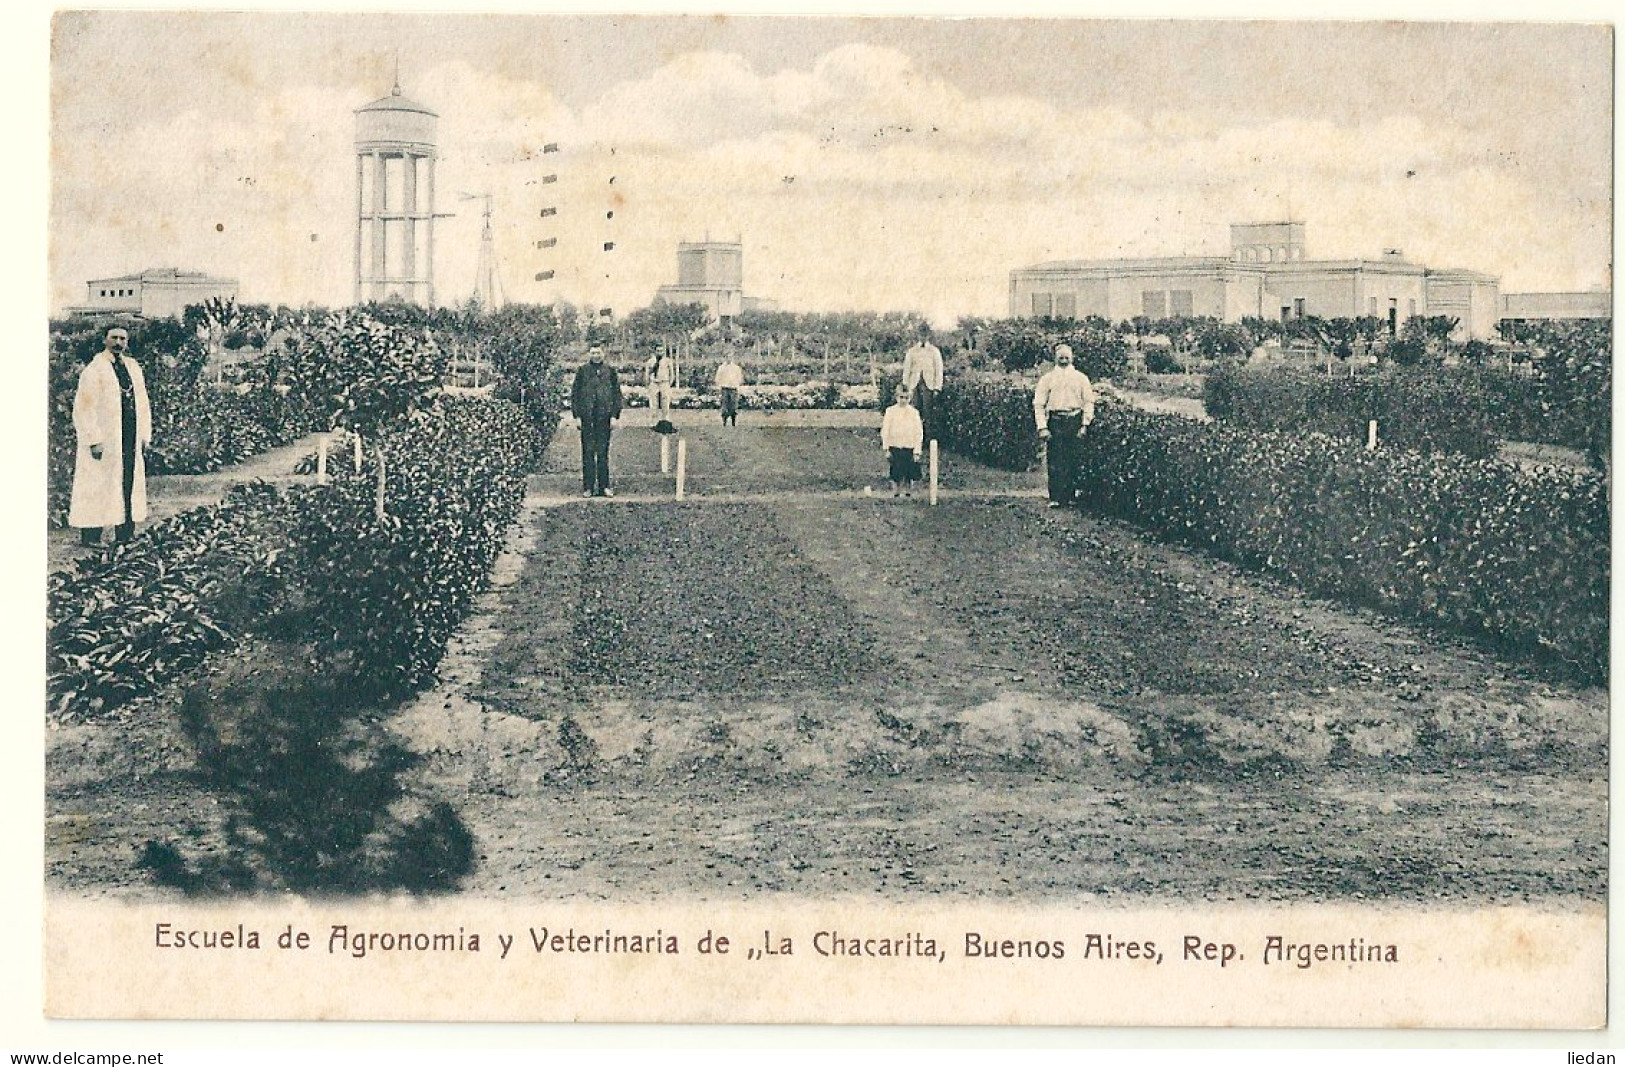 Escuela De Agronomia Y Veterinaria "La Chacarita" - Buenos Aires - Torino - 1911 - Argentina